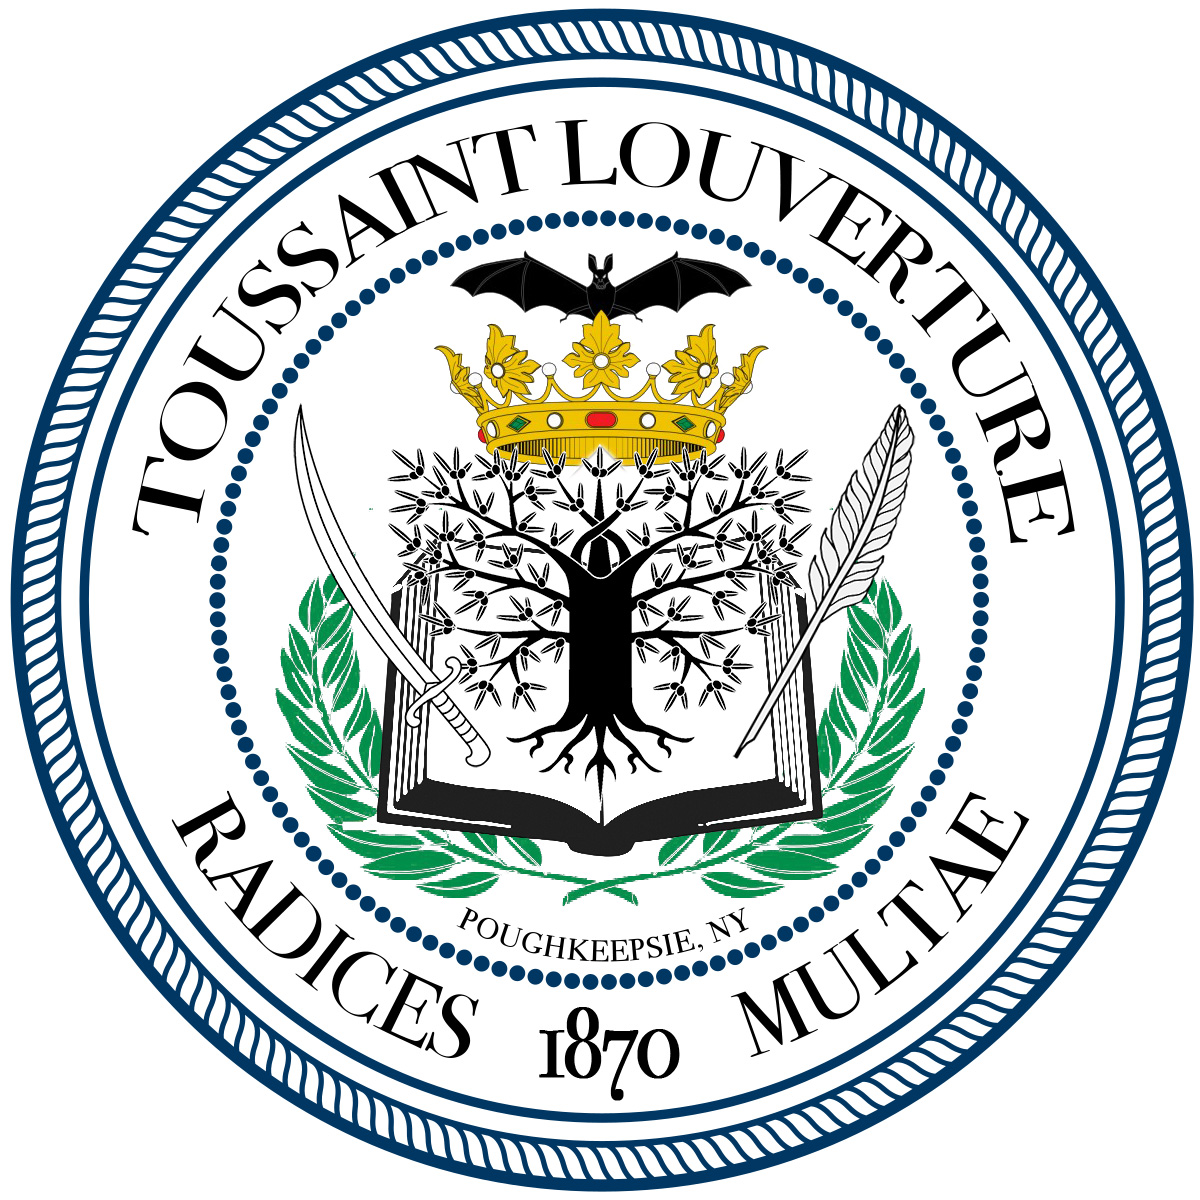 Toussaint L’Ouverture College - Decorative round seal logo.